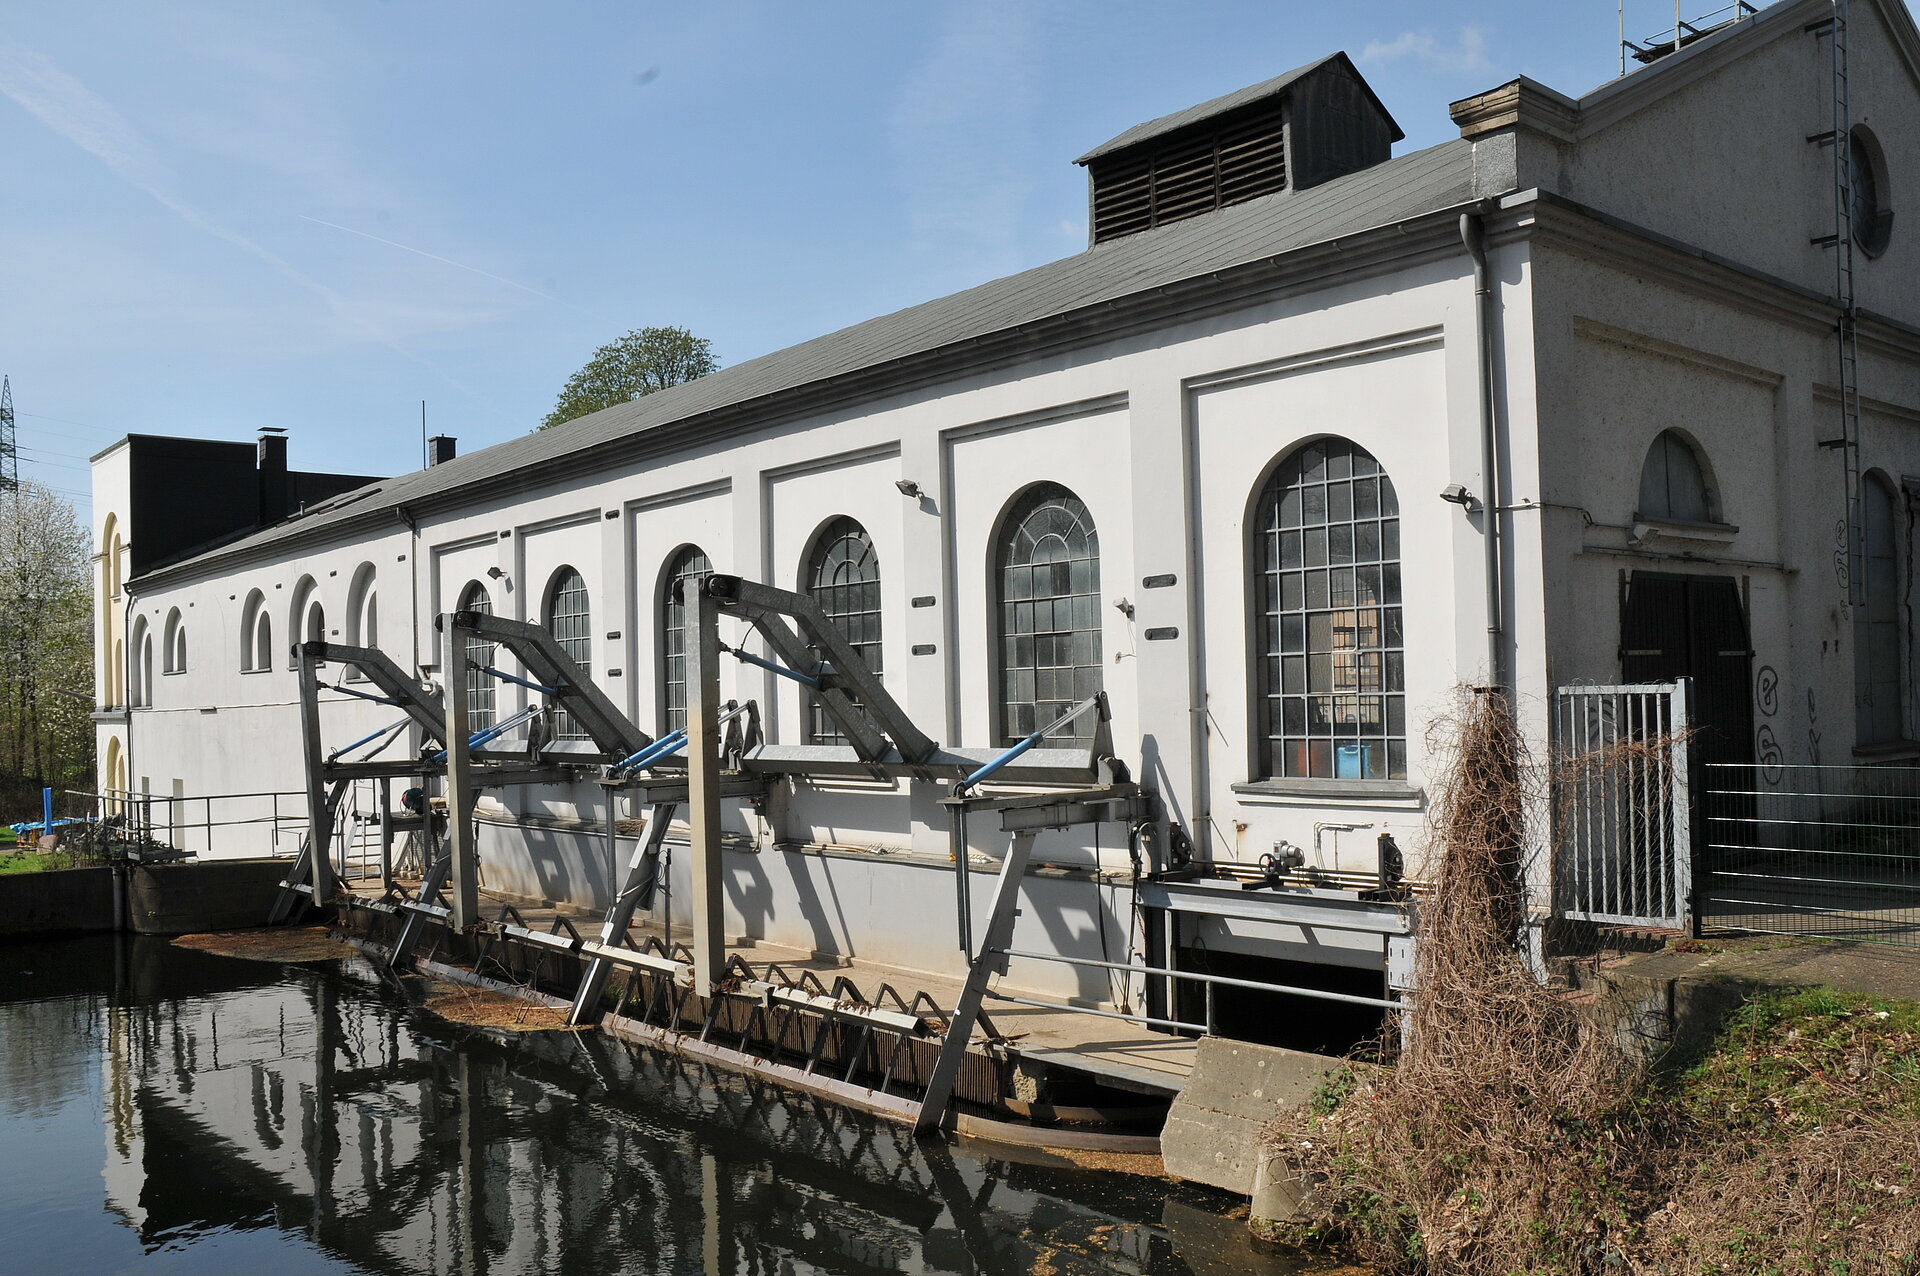 Die Buschmühle ist eine ehemalige Wassermühle und heutiges Laufwasserkraftwerk in Hagen-Garenfeld. 